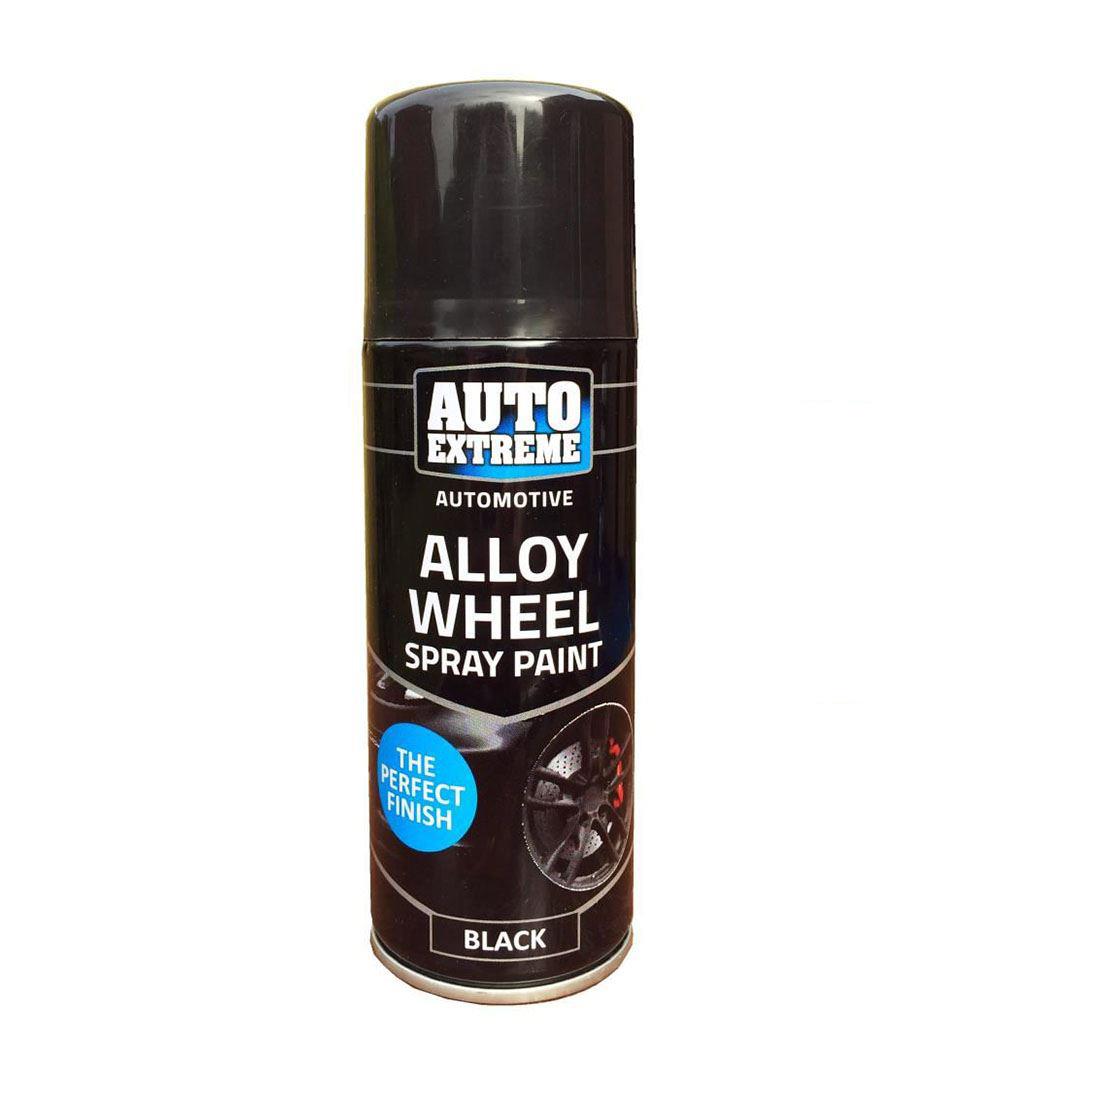 Black Alloy Wheel Spray Paint 200ml - Auto Extreme